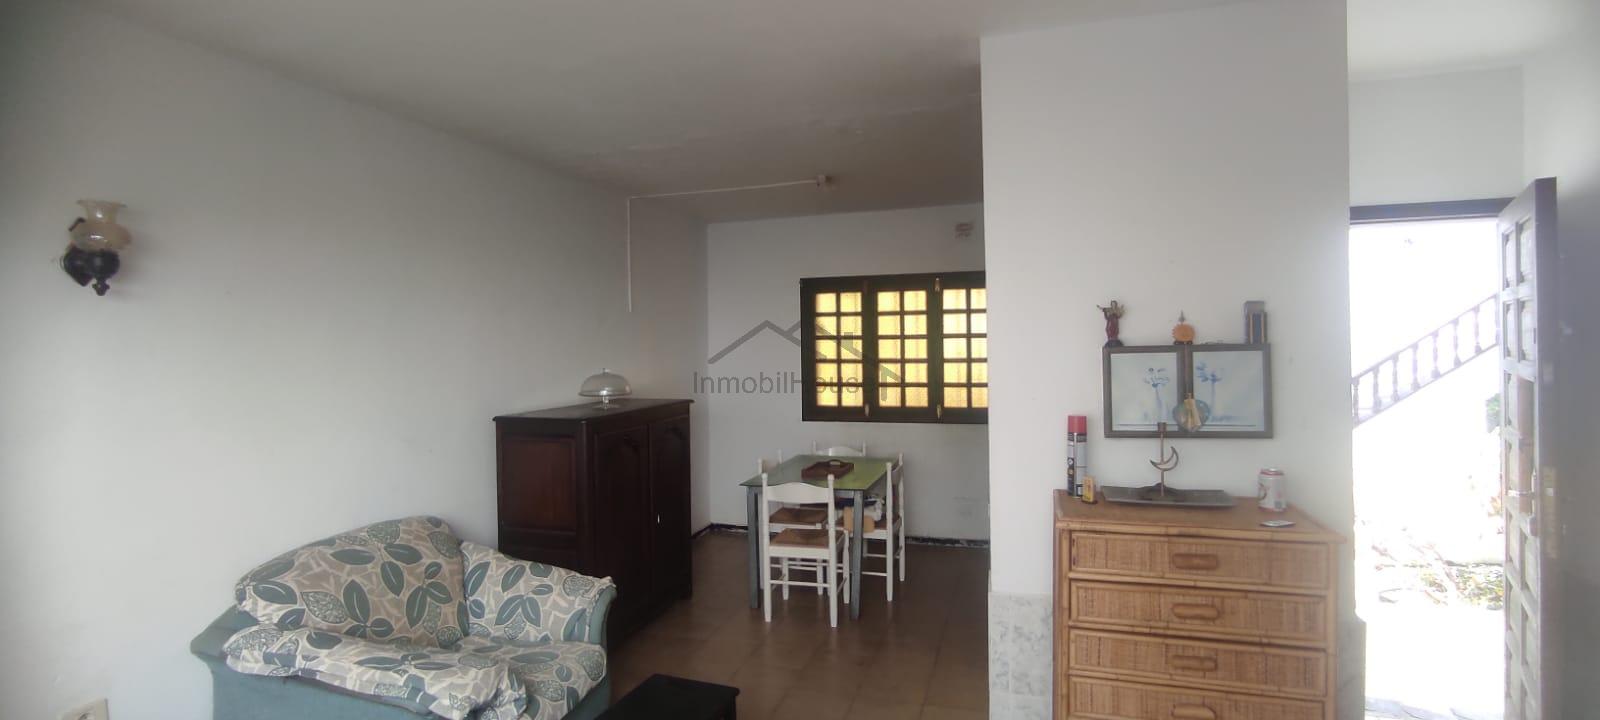 For sale of duplex in Costa del Silencio